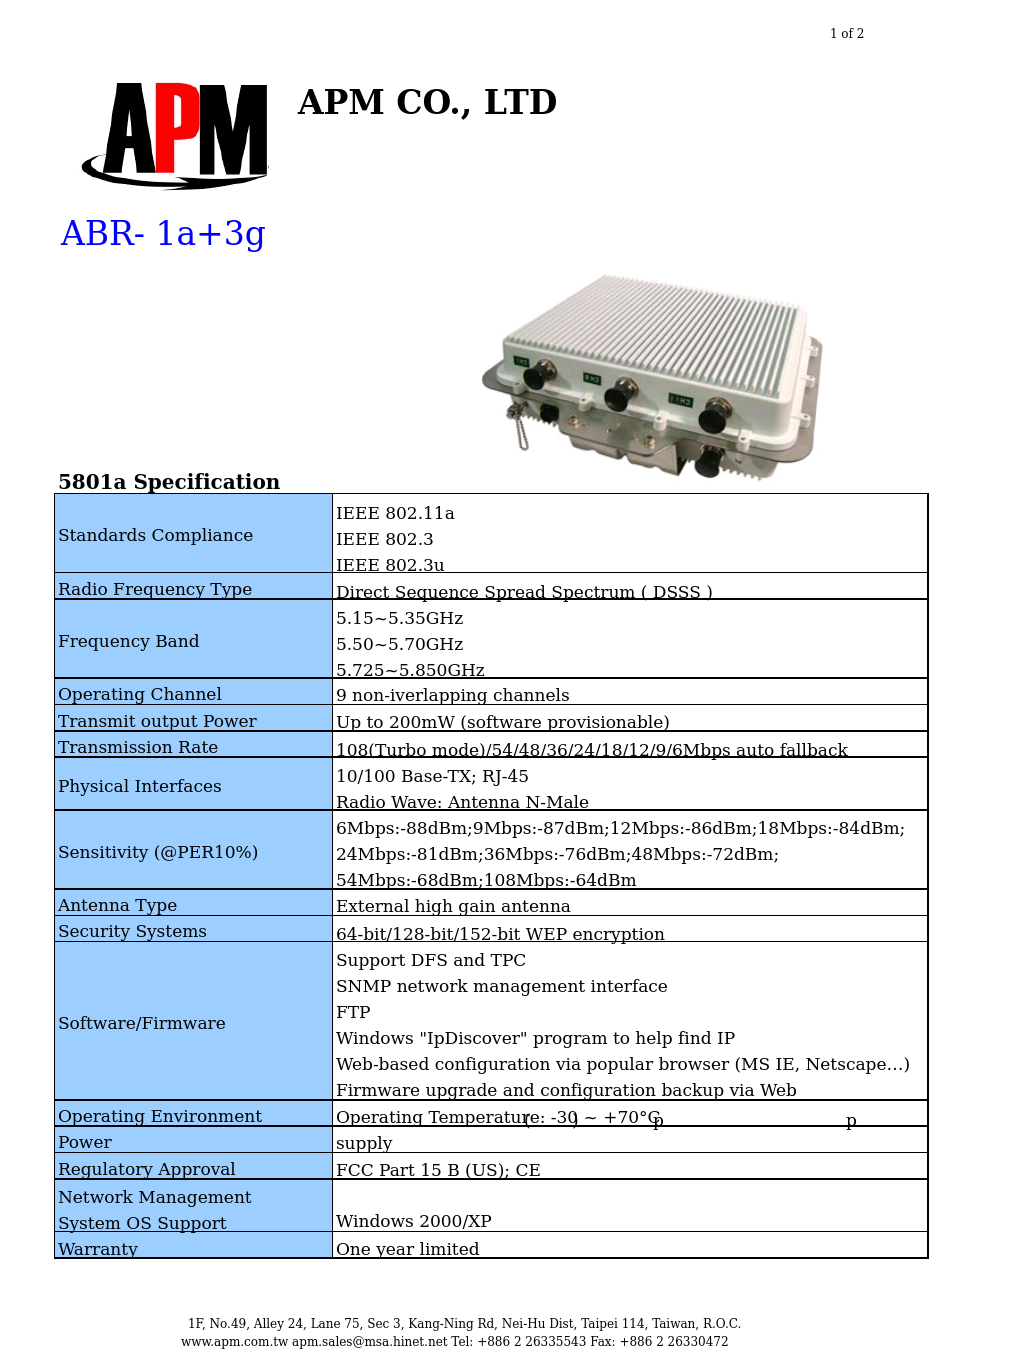 ABR-1A+3G